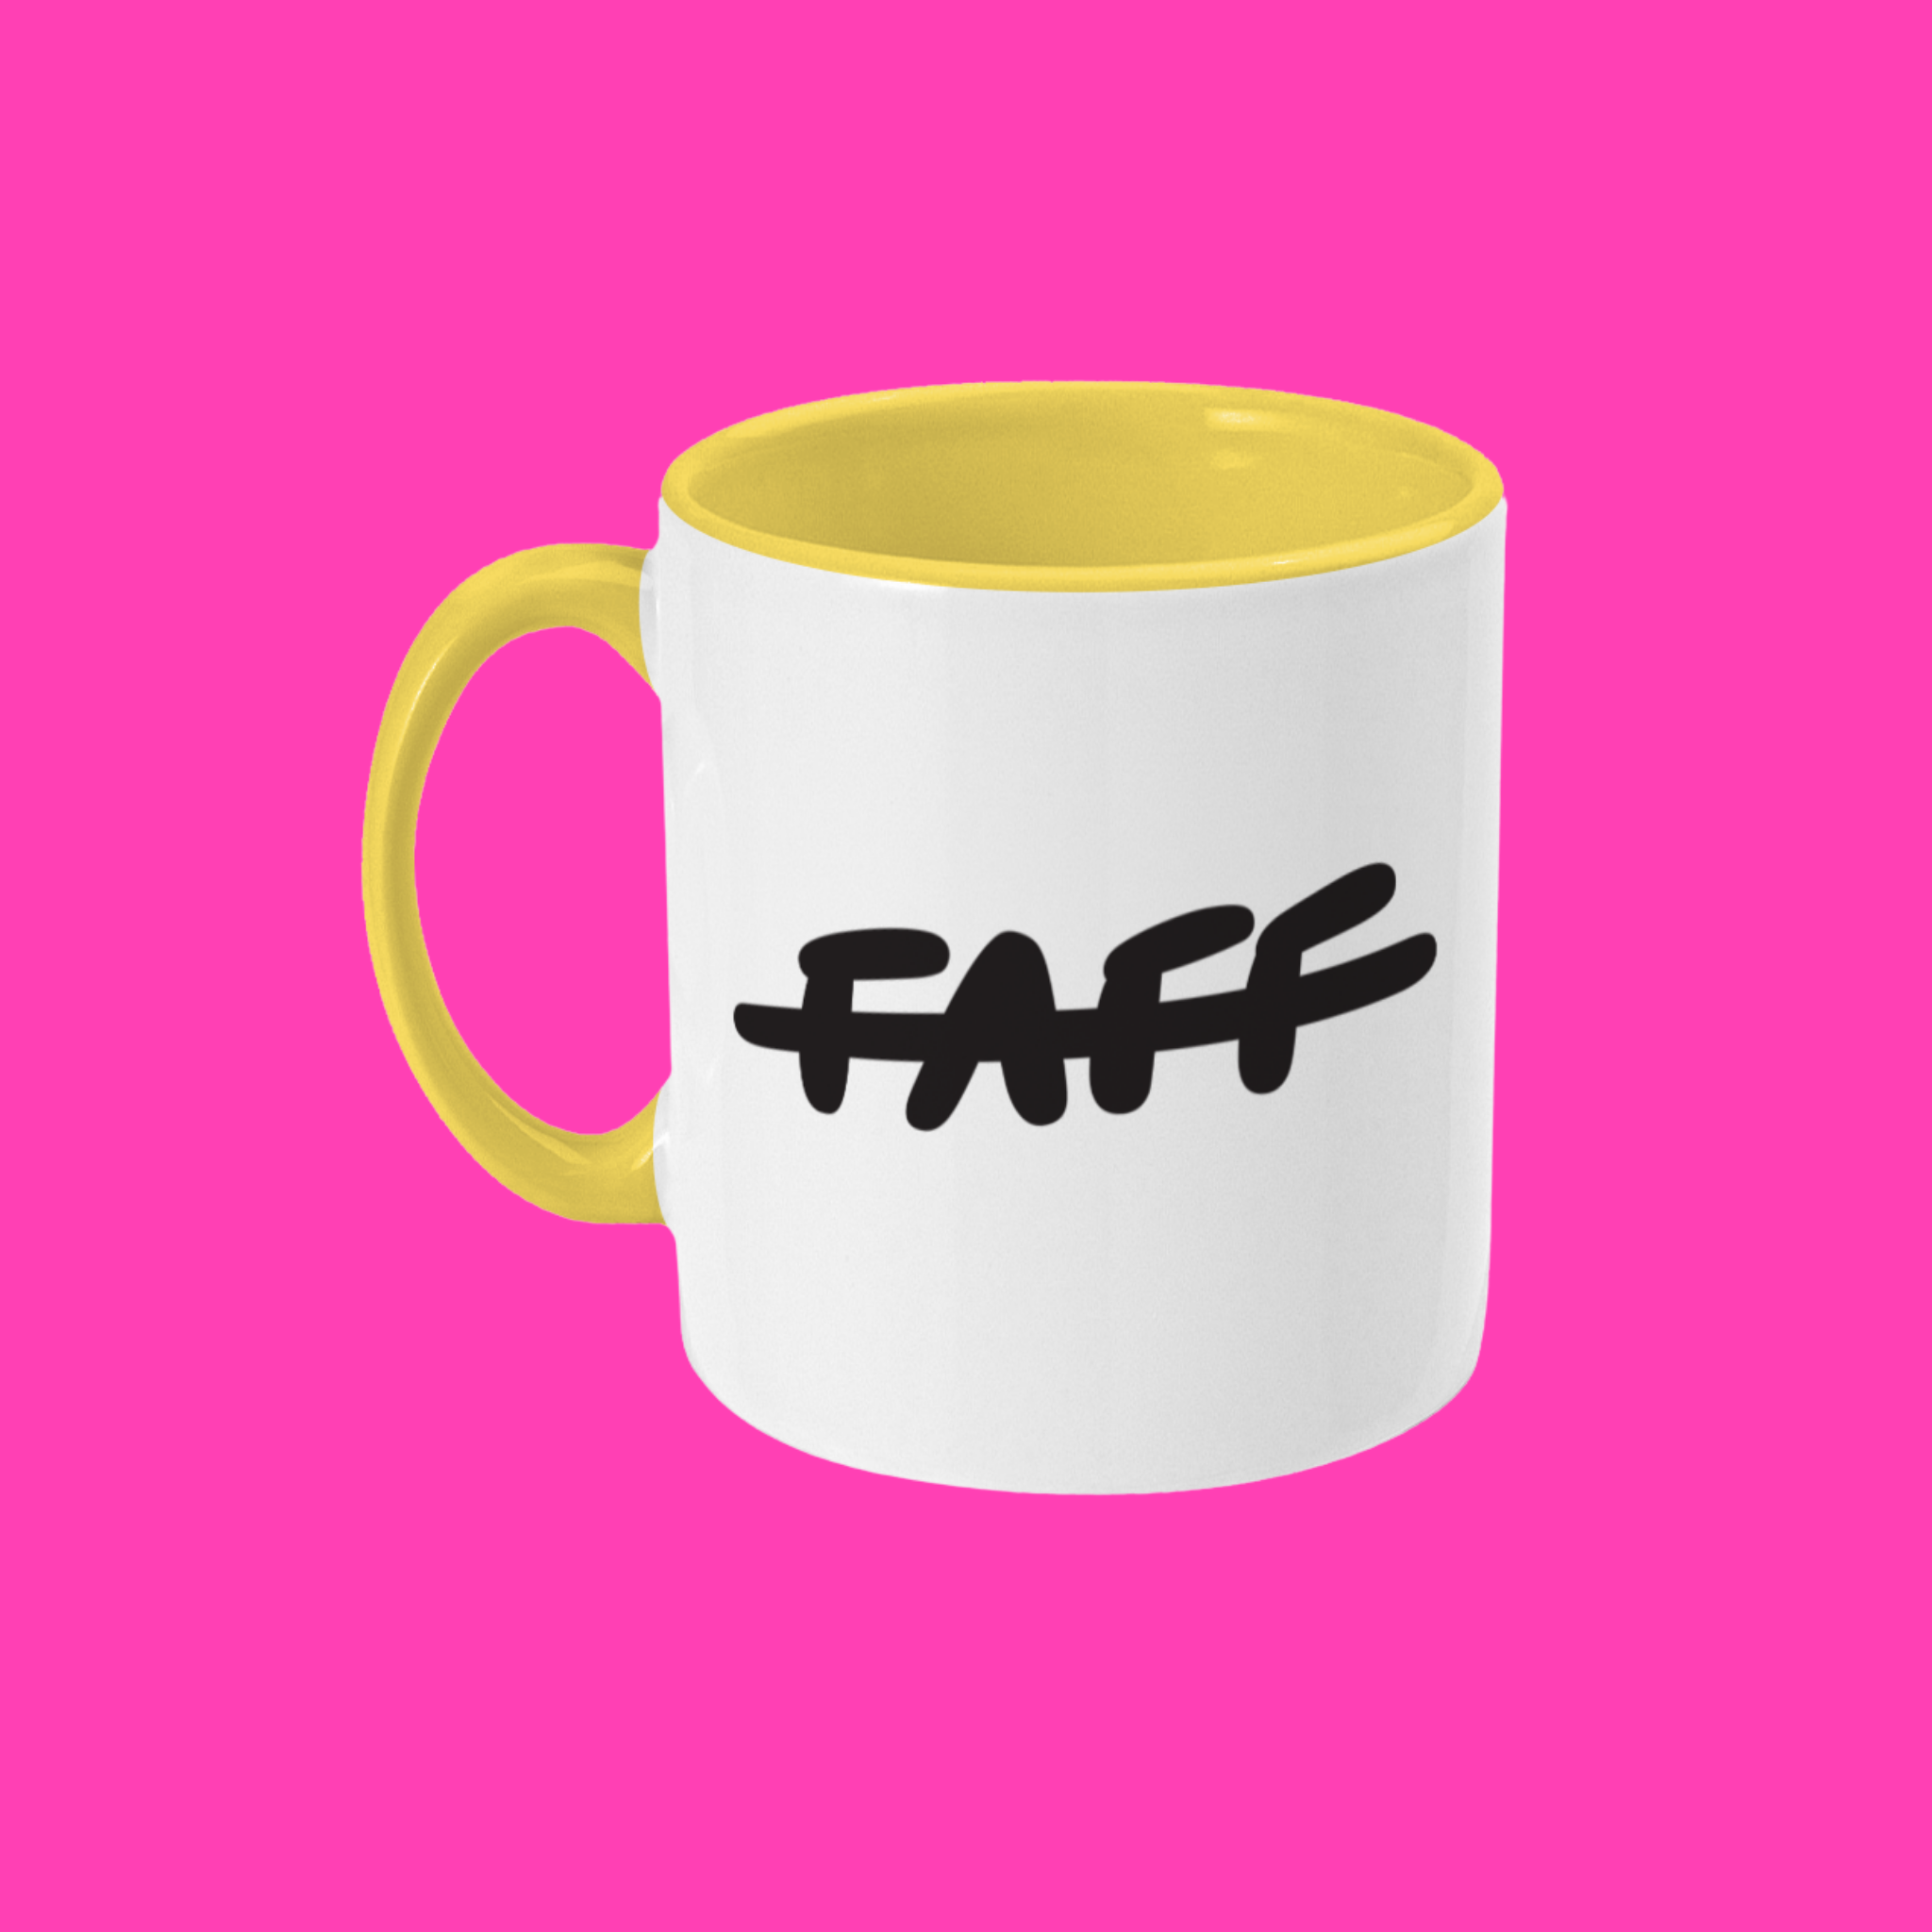 FAFF 11oz MUG - Made for Bags